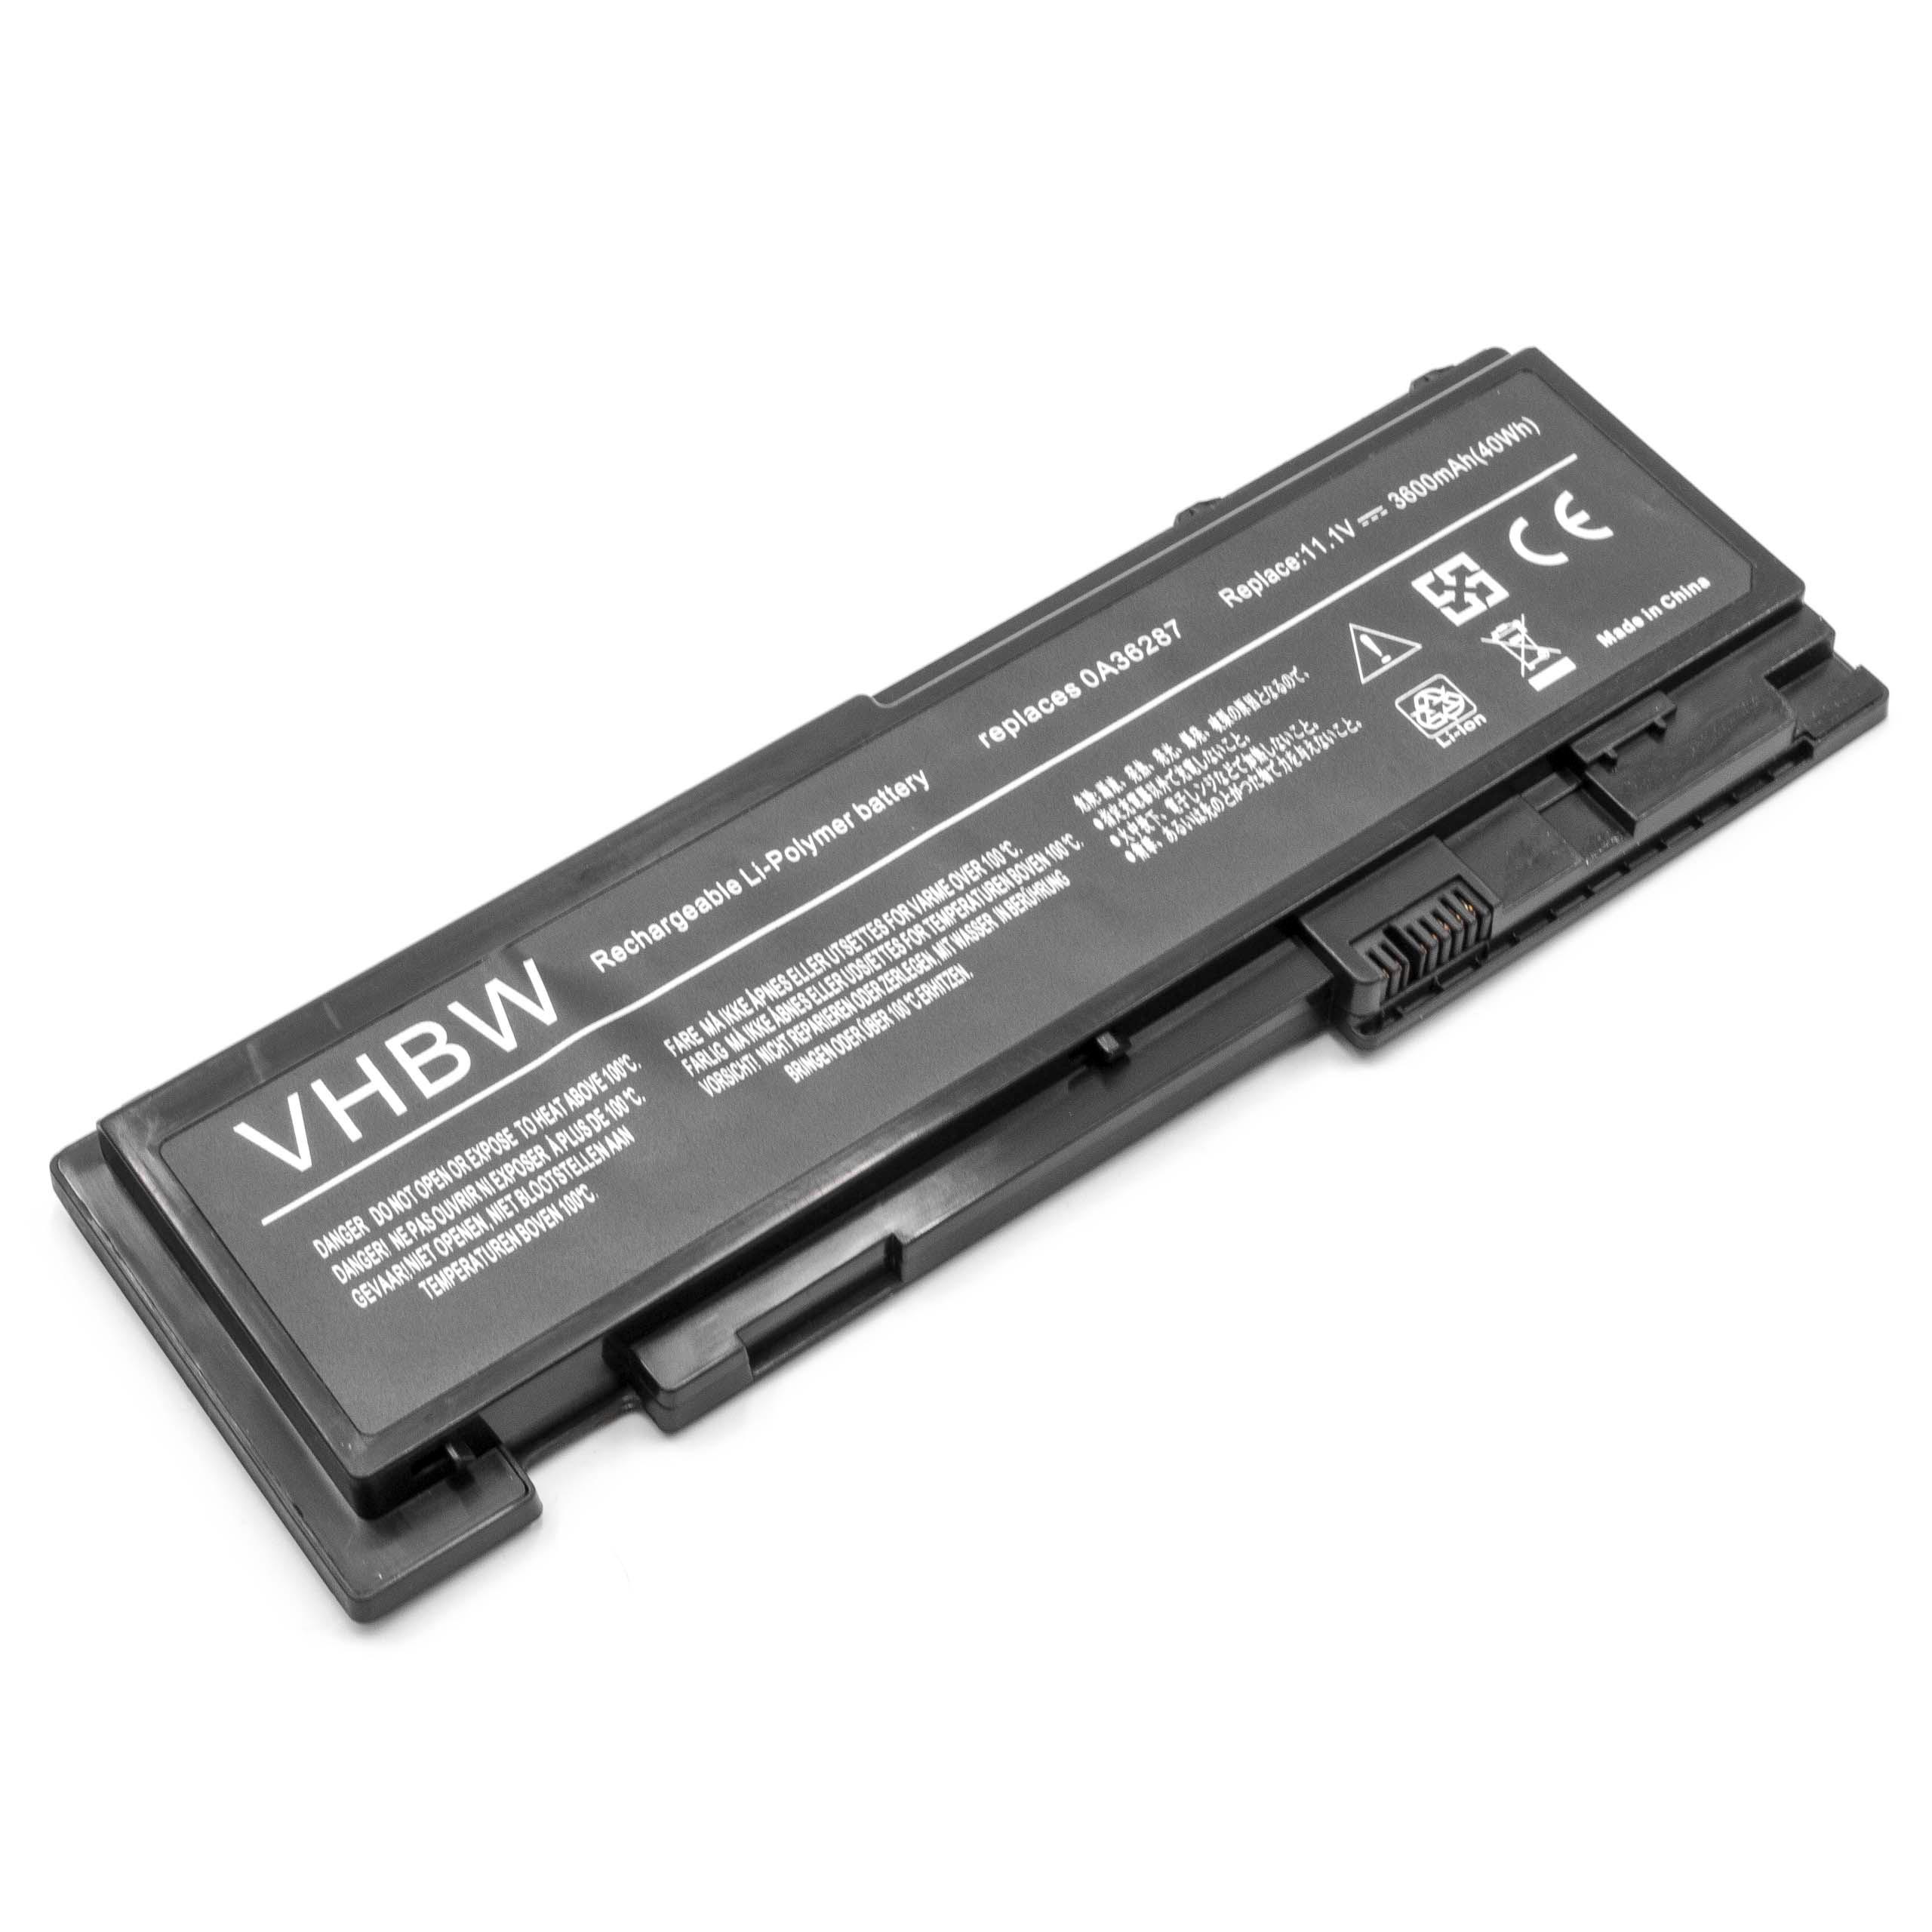 Batería reemplaza Lenovo 0A36309, 0A36287, 42T4844 para notebook Lenovo - 3600 mAh 11,1 V Li-poli negro